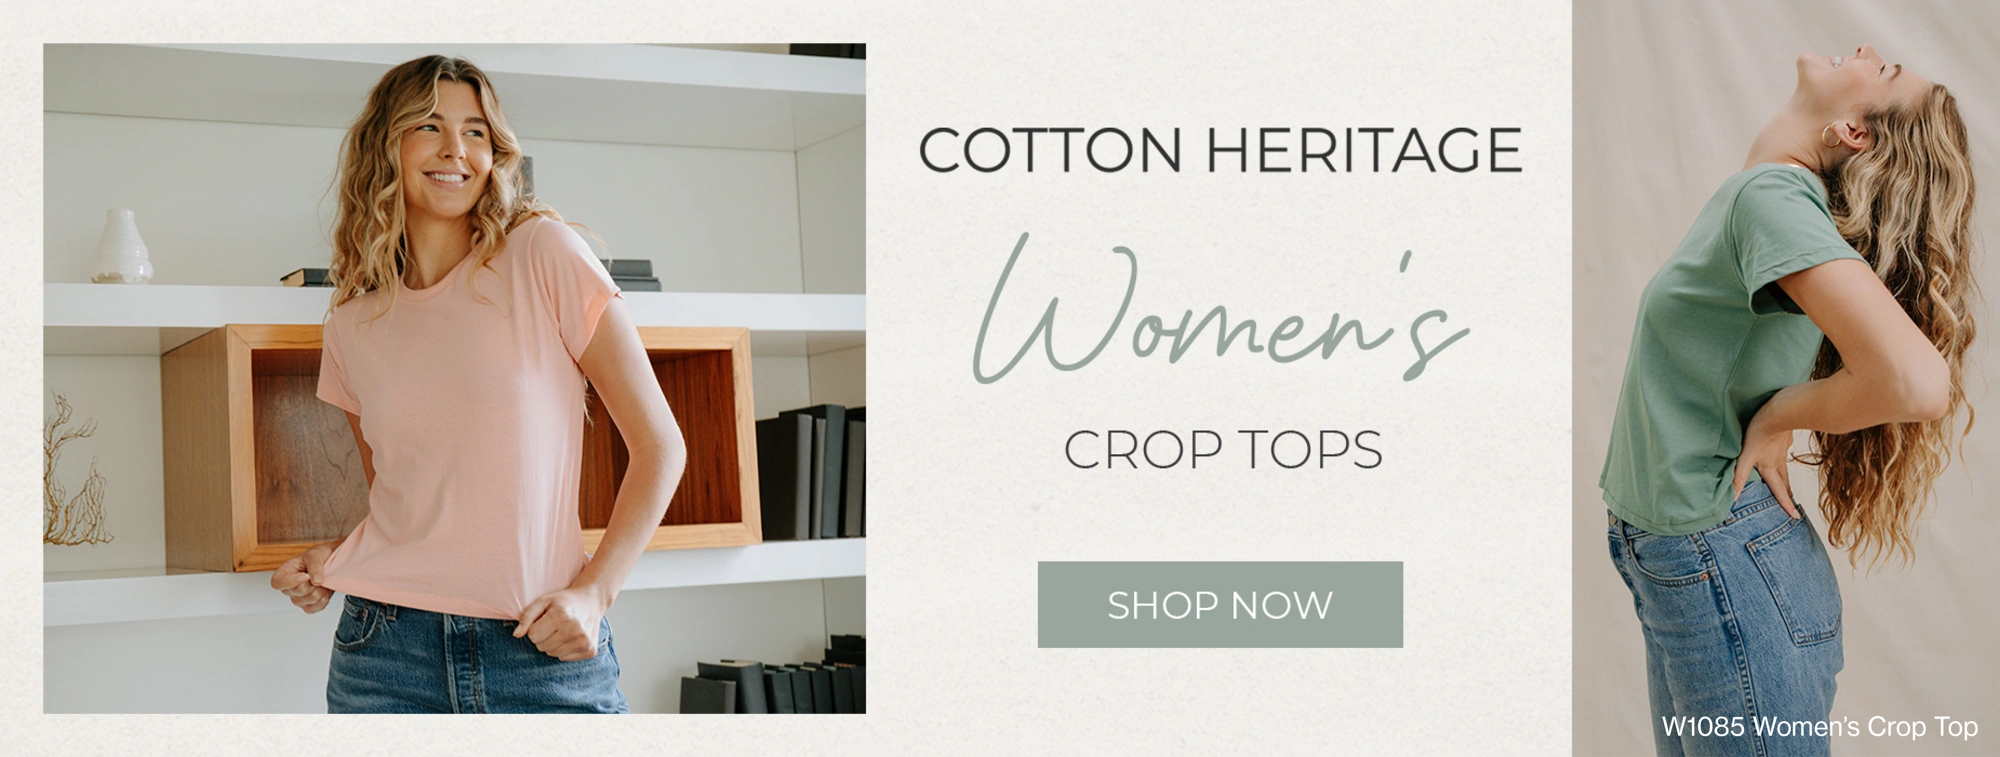 Cotton Heritage Women's Crop Tops